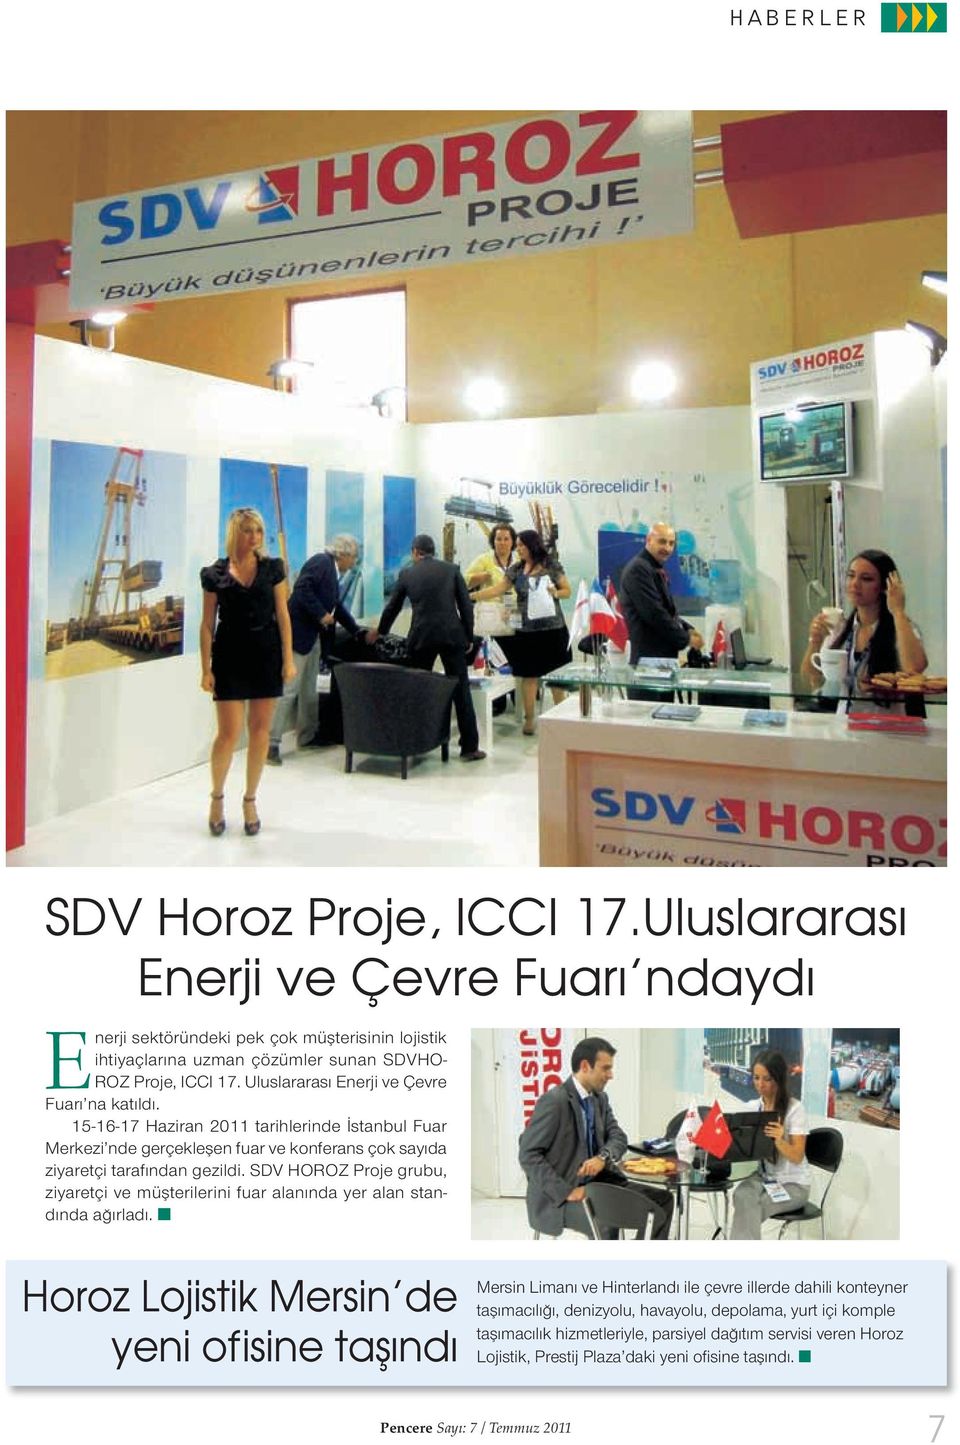 Uluslararası Enerji ve Çevre Fuarı na katıldı. 15-16-17 Haziran 2011 tarihlerinde İstanbul Fuar Merkezi nde gerçekleşen fuar ve konferans çok sayıda ziyaretçi tarafından gezildi.